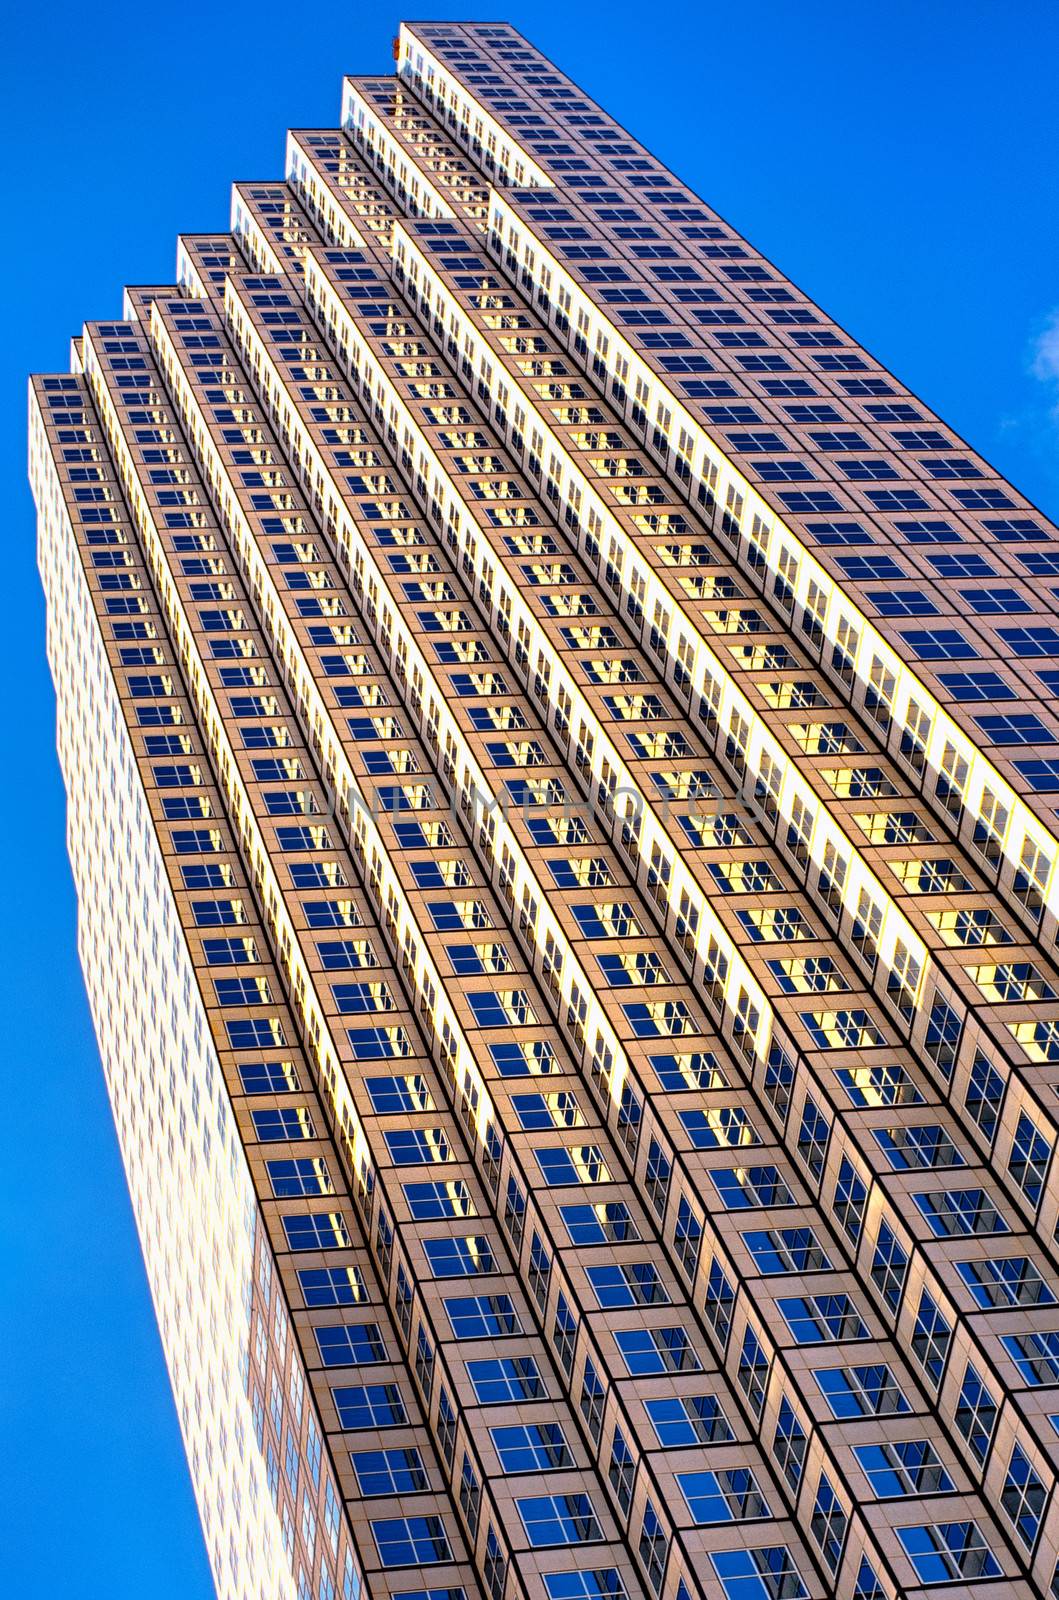 Skyscraper in Miami by CelsoDiniz